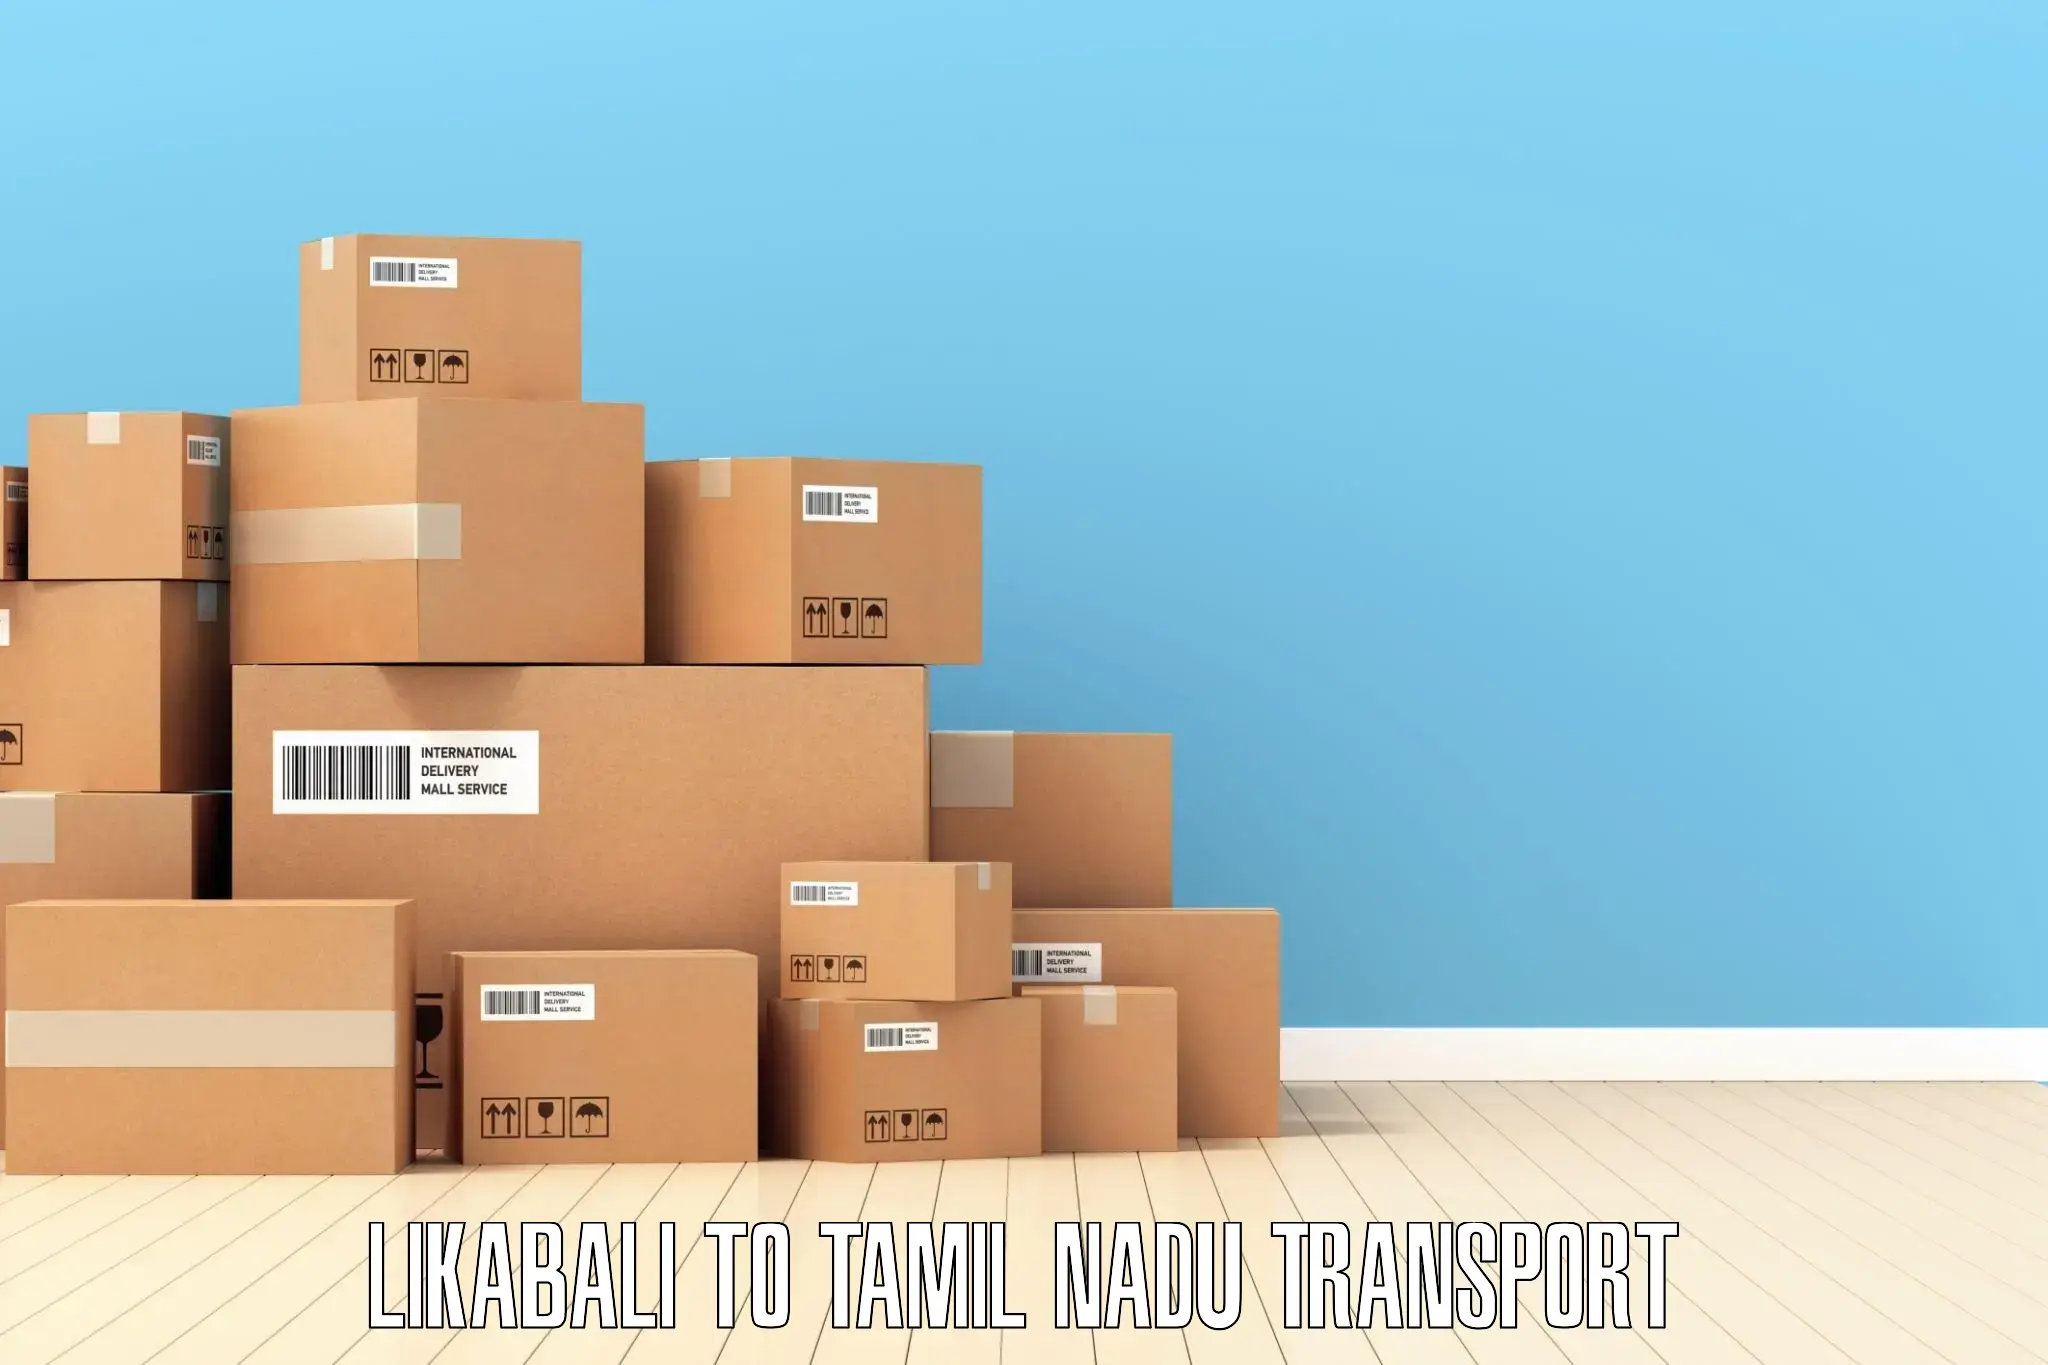 Transport shared services Likabali to Salem